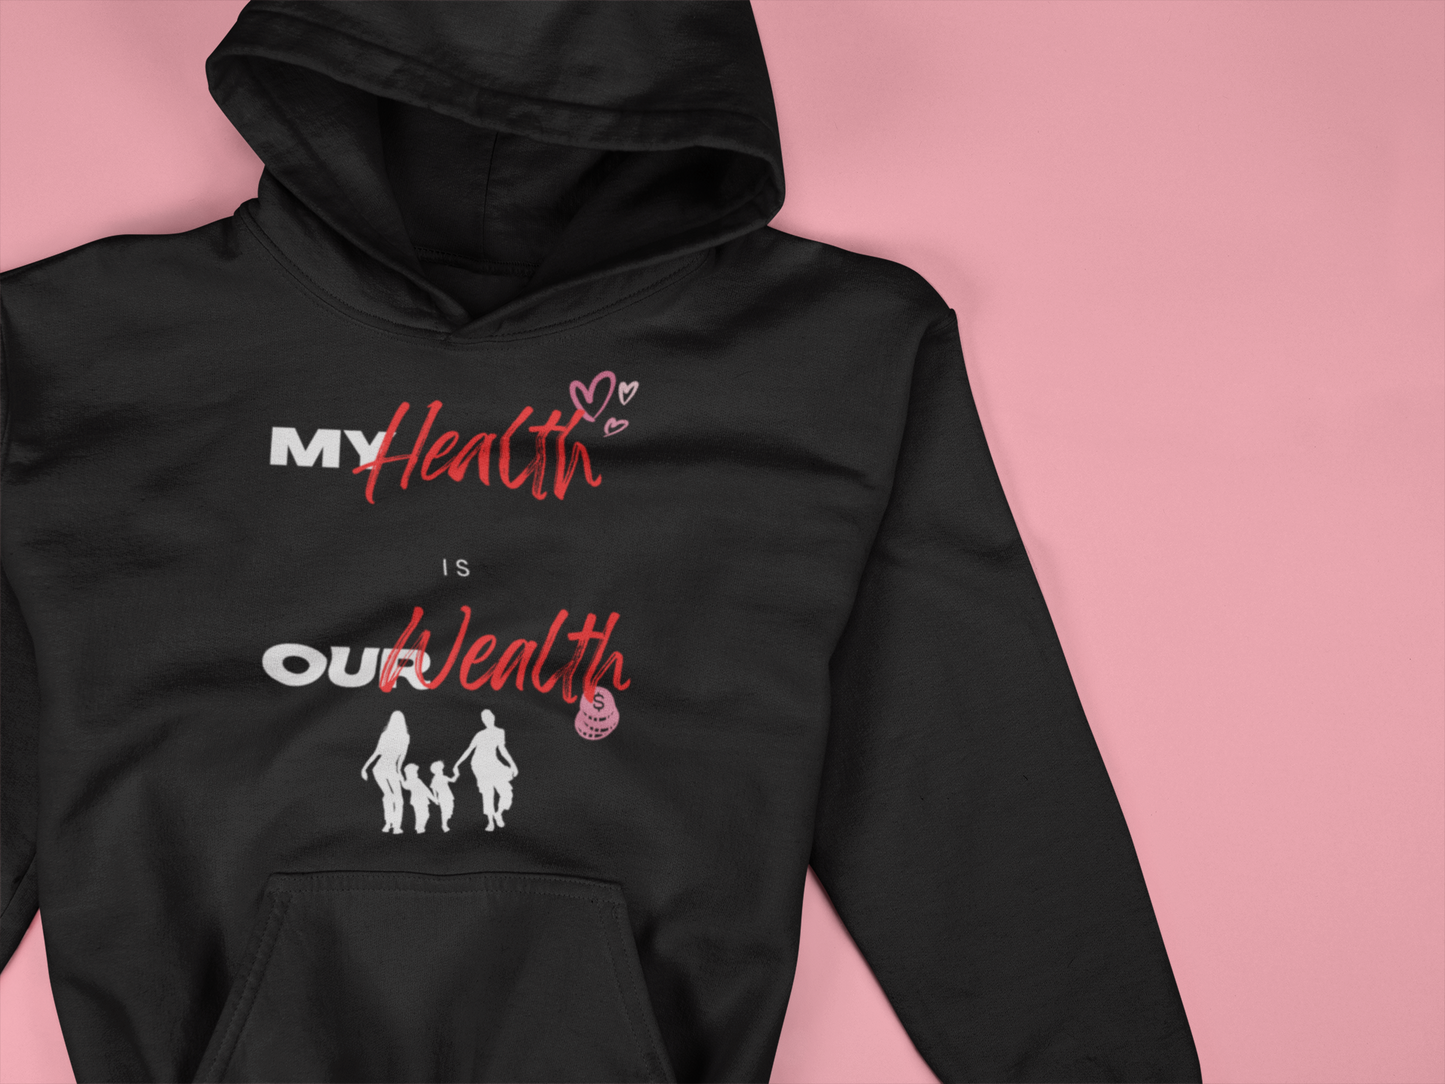 My Health is Our Wealth Unisex Hooded Sweatshirt (Dark Hoodie)